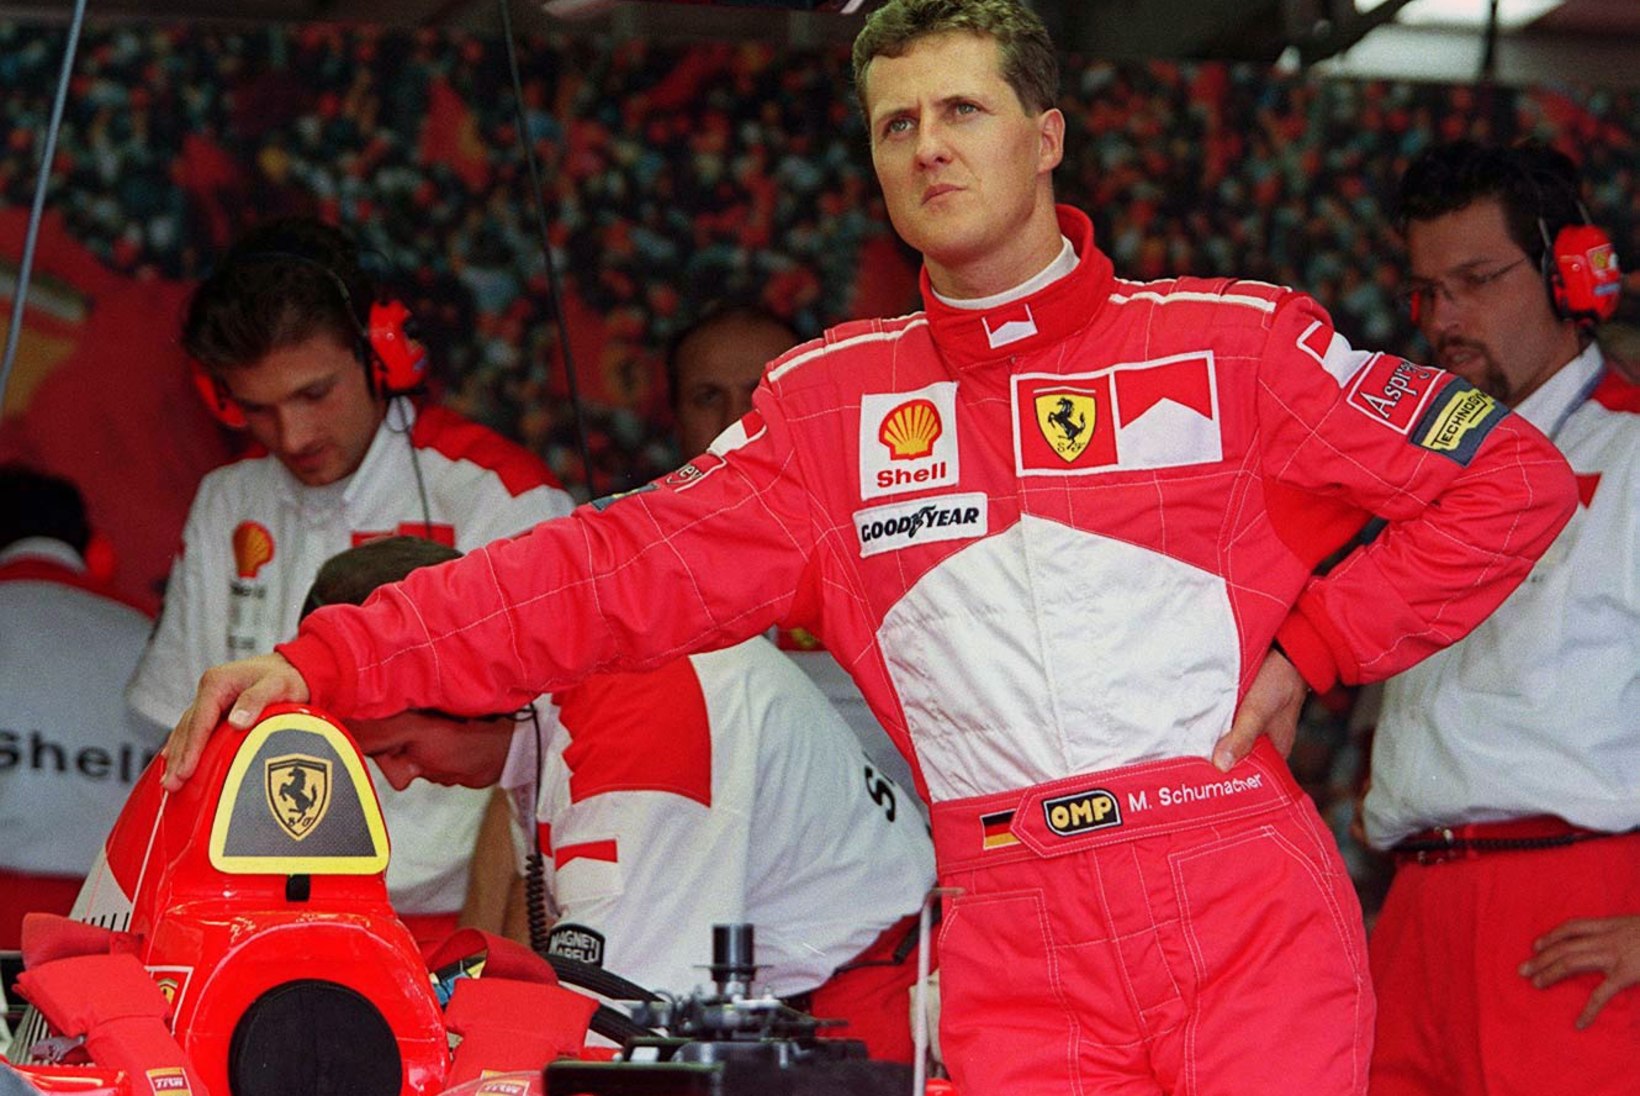 Endine vormeliäss ladus Vettelile ja kogu sarjale puid alla, kuid ülistas Schumacherit